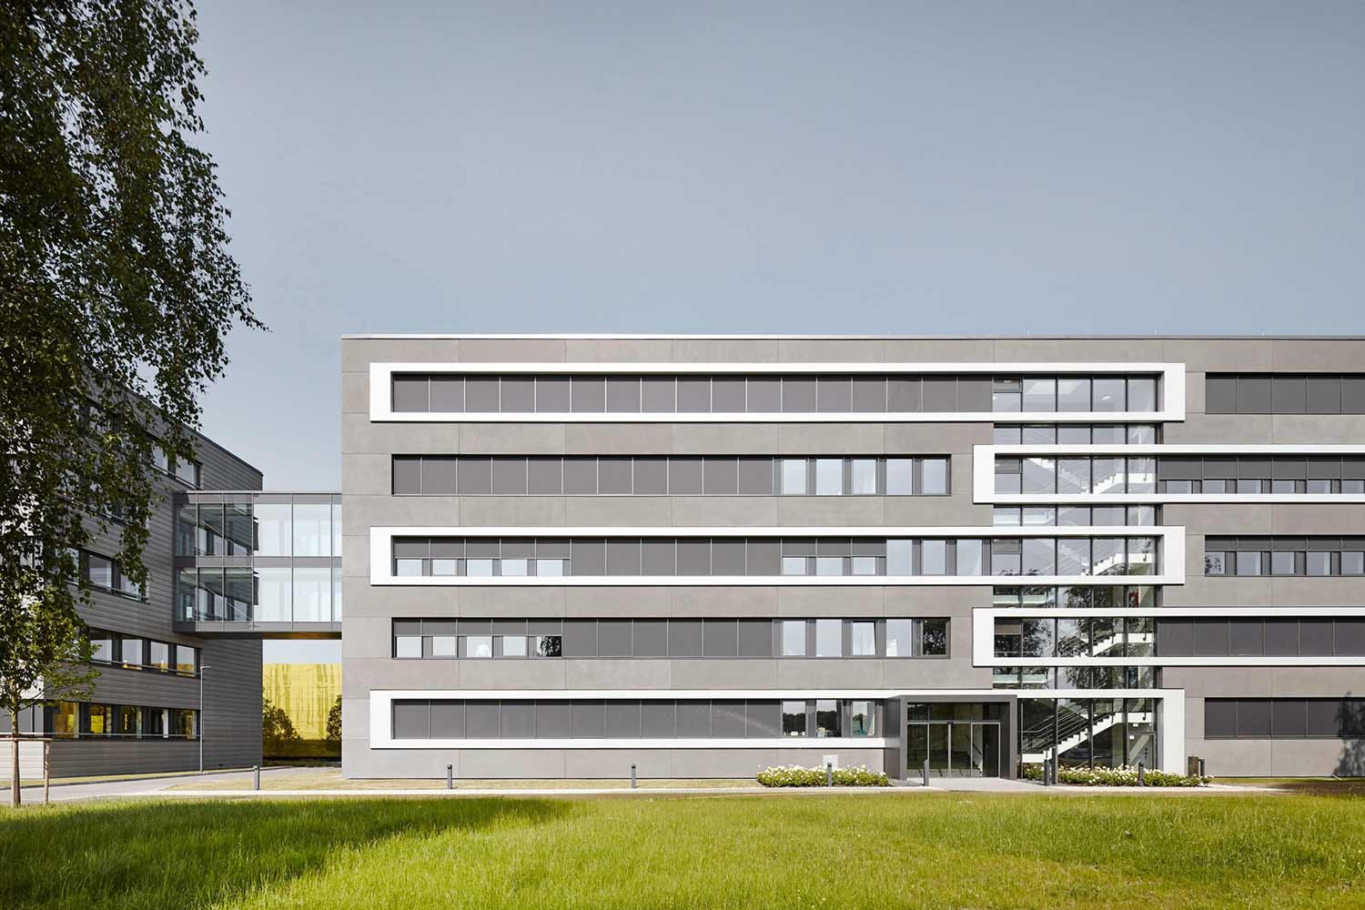 Architekturfotografie NRW Lioba Schneider: Neubau der Firmenzentrale in Essen für ALDI Süd. Mehrstöckige kubische Baukörper werden durch durchgehende Fensterbänder gerastert.